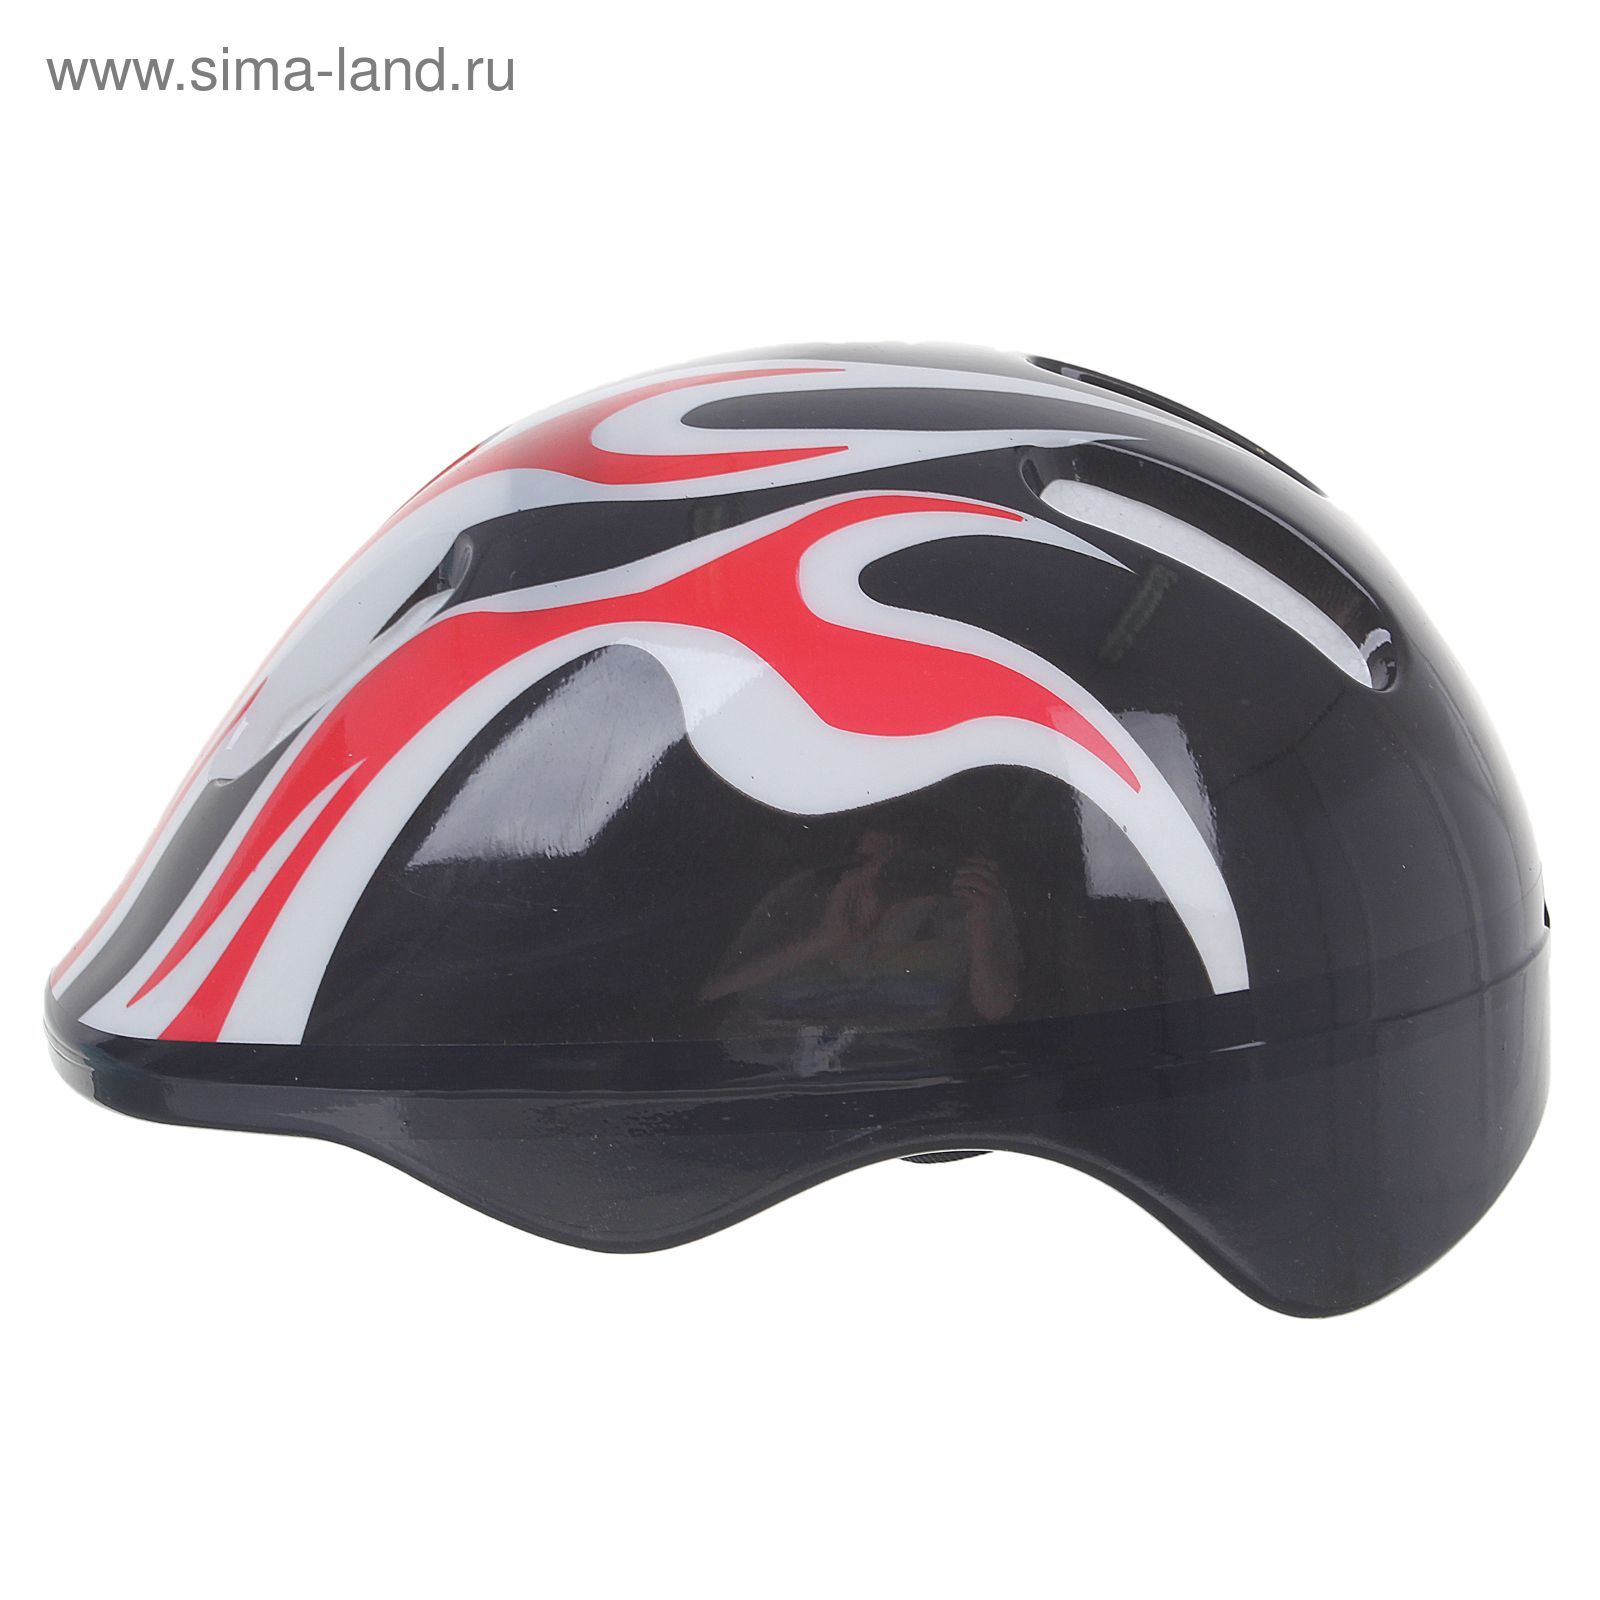 Шлем защитный детский OT-H6, размер M (55-58 см), цвет: черный